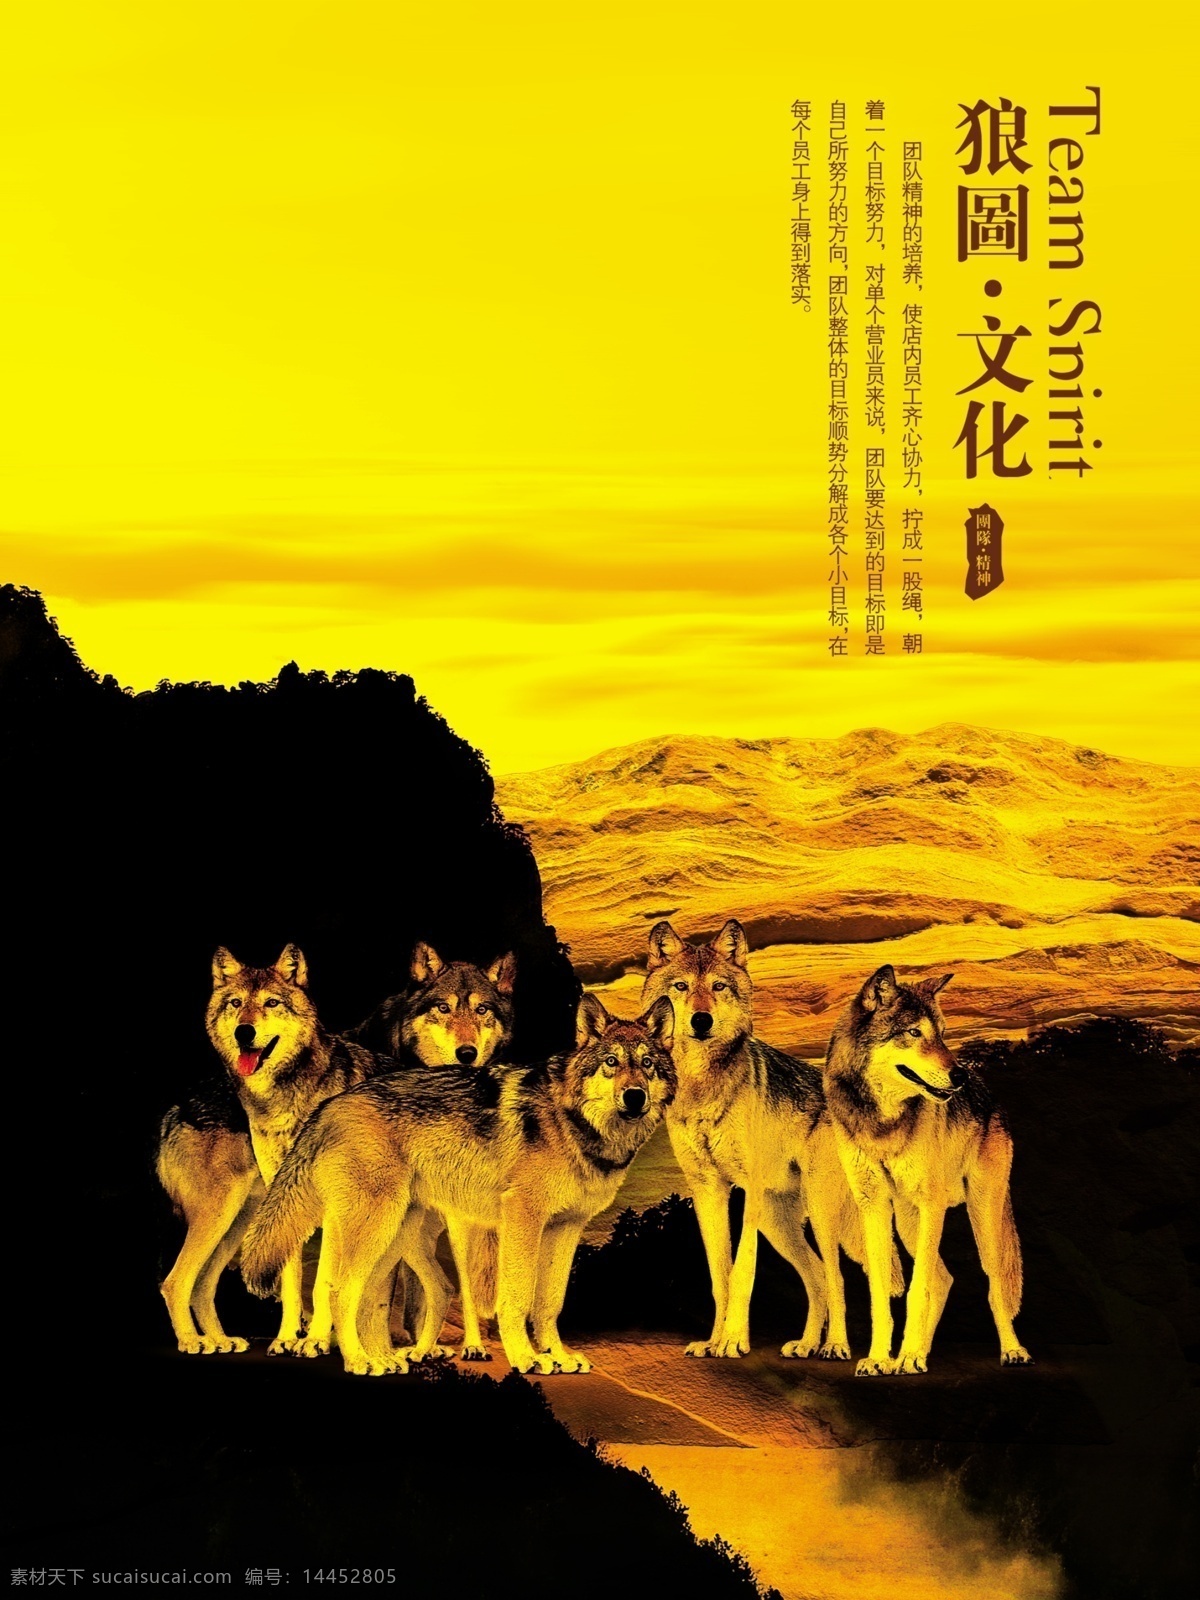 狼 图 文化 山石 天空 五匹狼 海报 企业文化海报